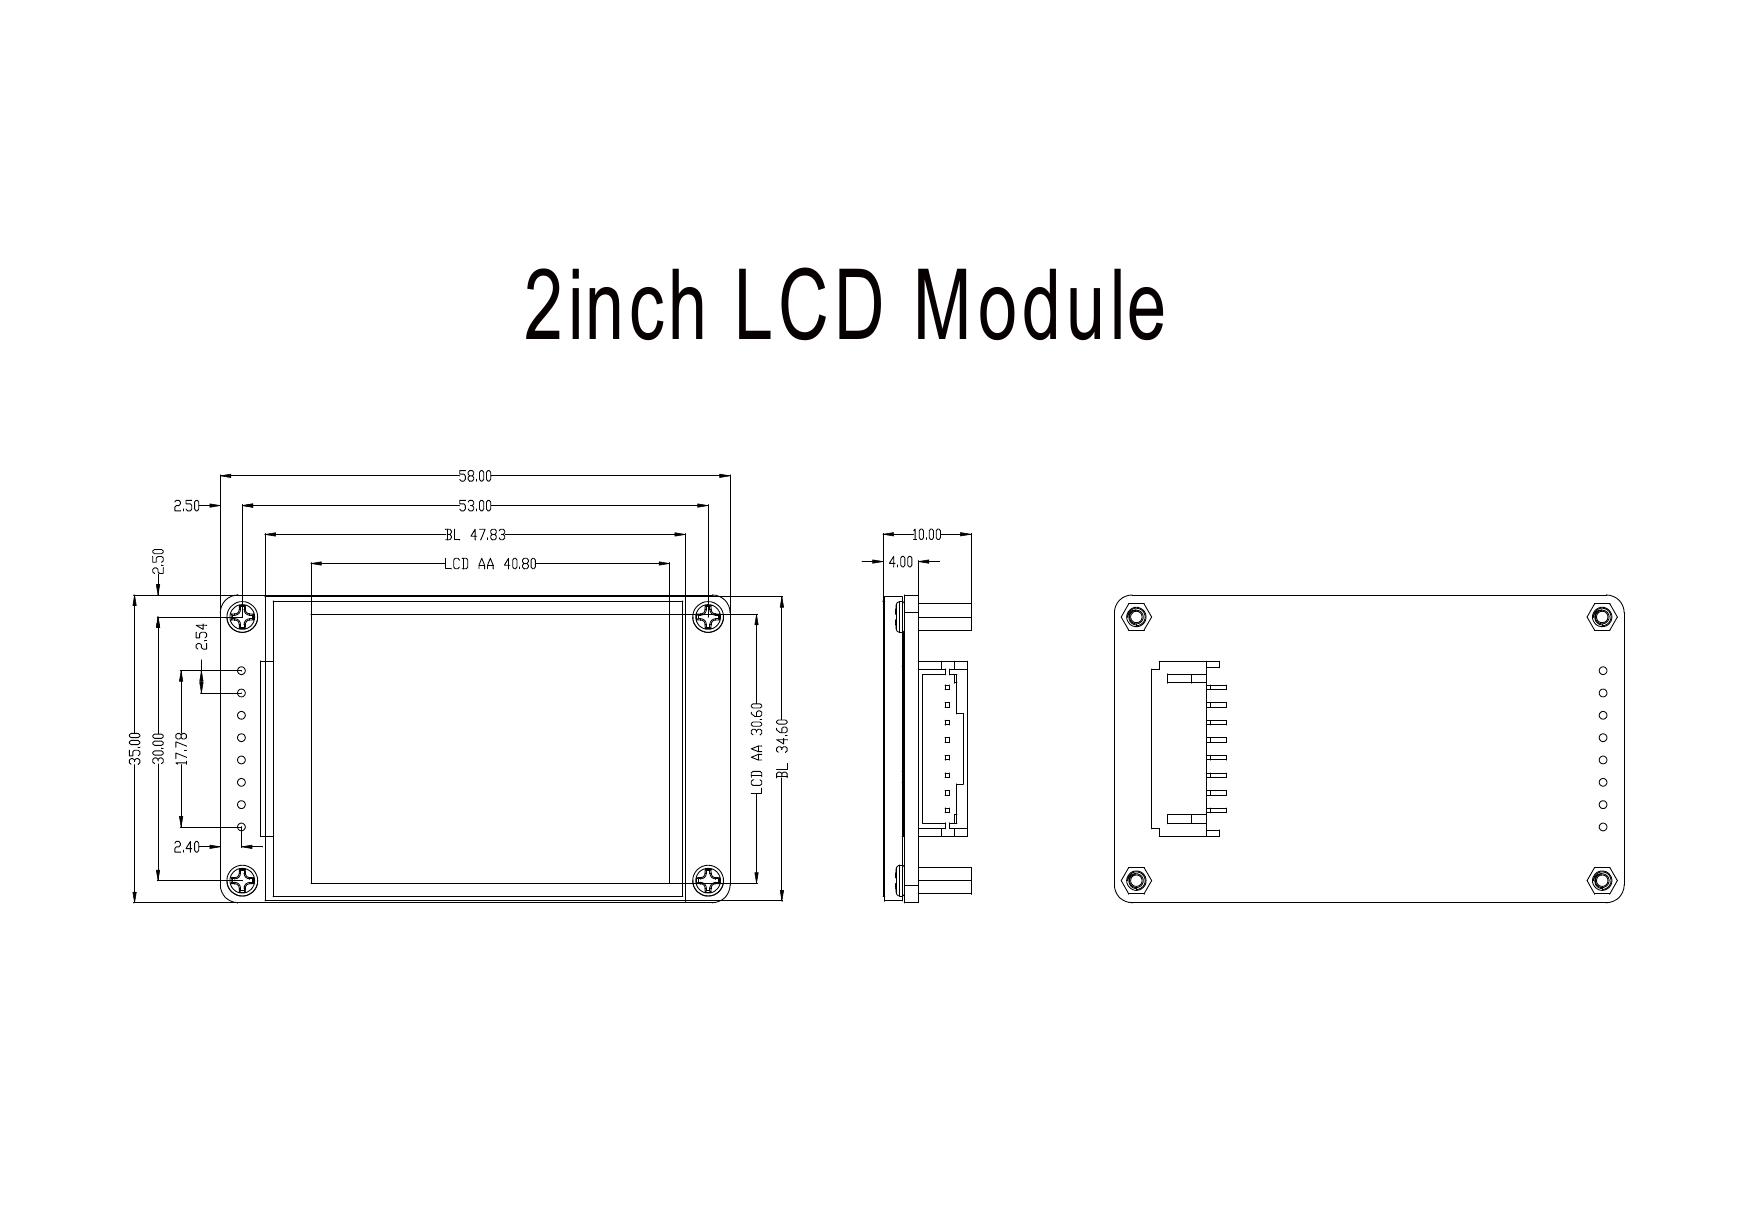 2inch LCD Module 2D 图纸(2inch_LCD_Module_2D_Drawing).pdf